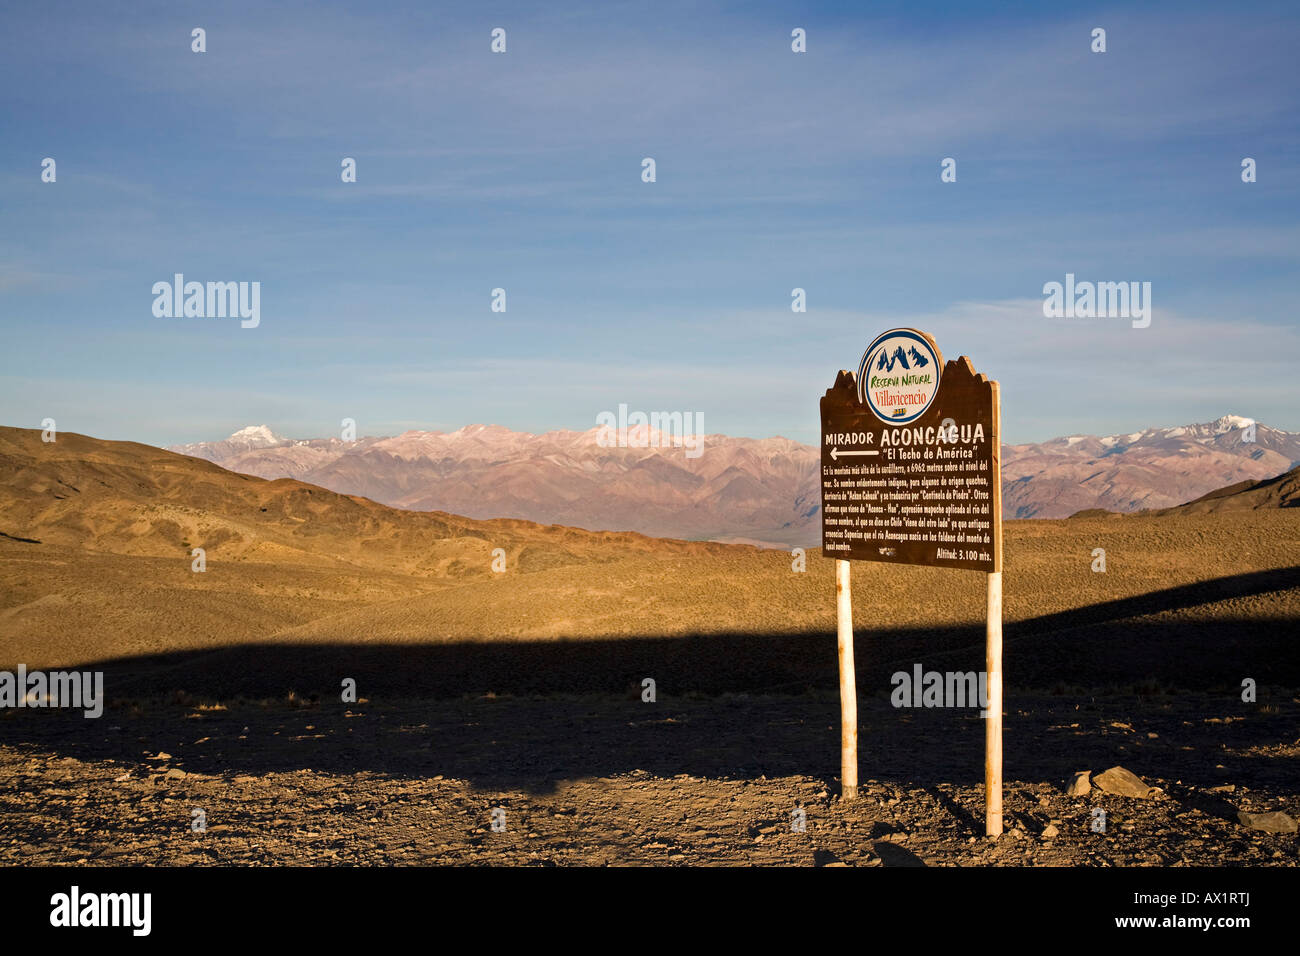 Panel informativo con vulcan Aconcagua en el fondo, la primera luz de la mañana, la zona central de los Andes, Argentina, Sudamérica Foto de stock